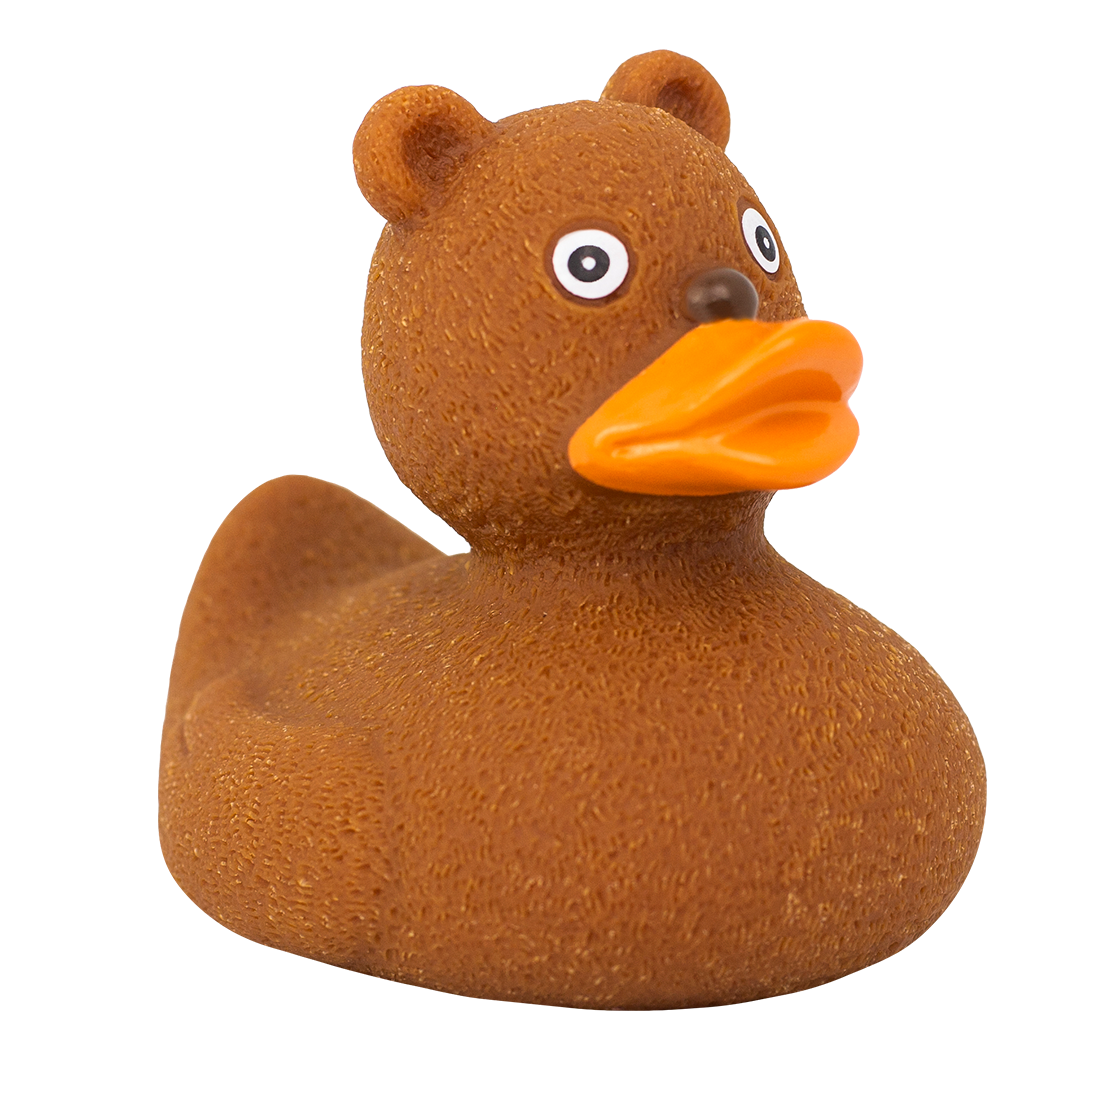 Teddy bear duck